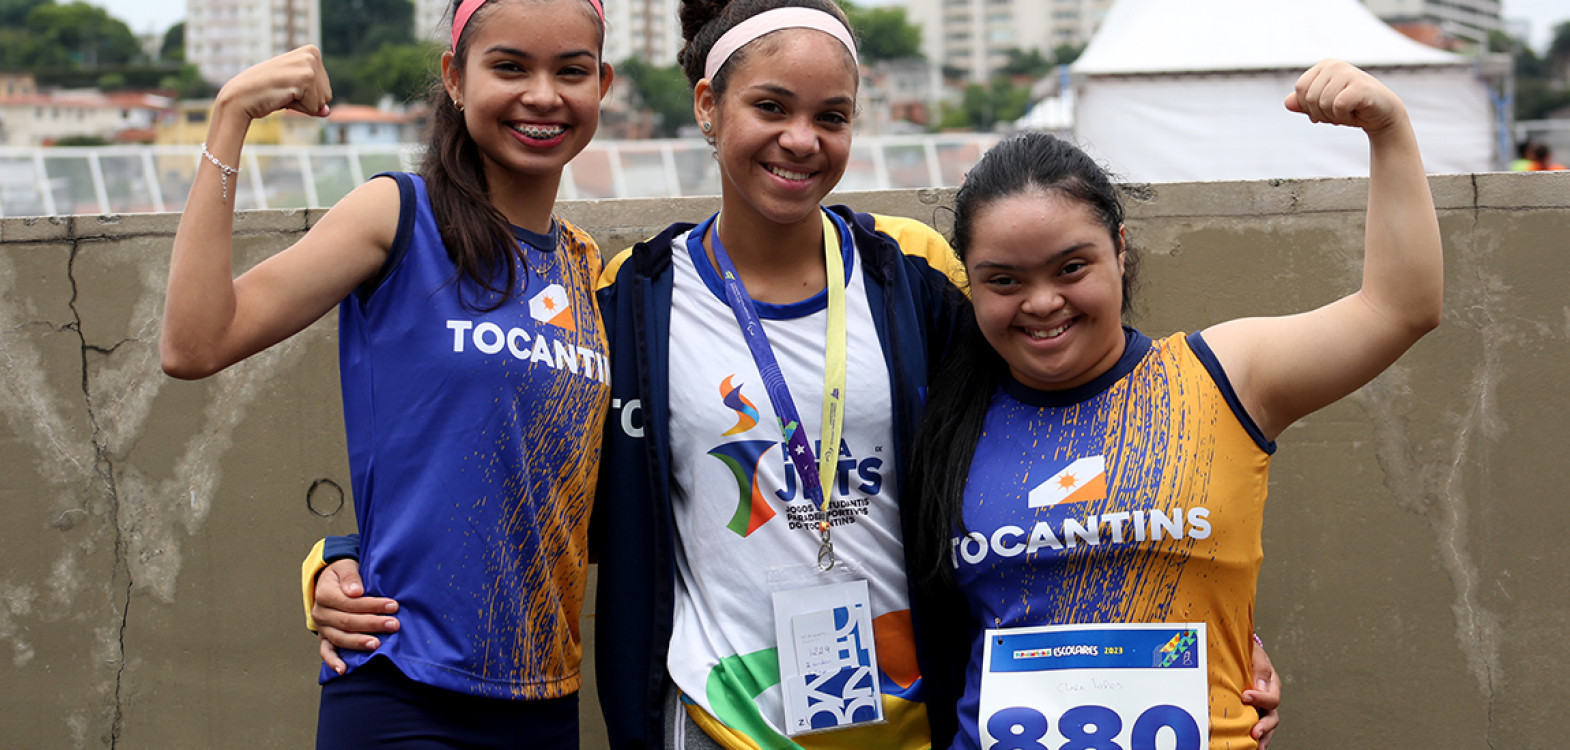 Aproximadamente 130 estudantes tocantinenses disputaram medalhas na 9ª edição dos Jogos Estudantis Paradesportivos do Tocantins